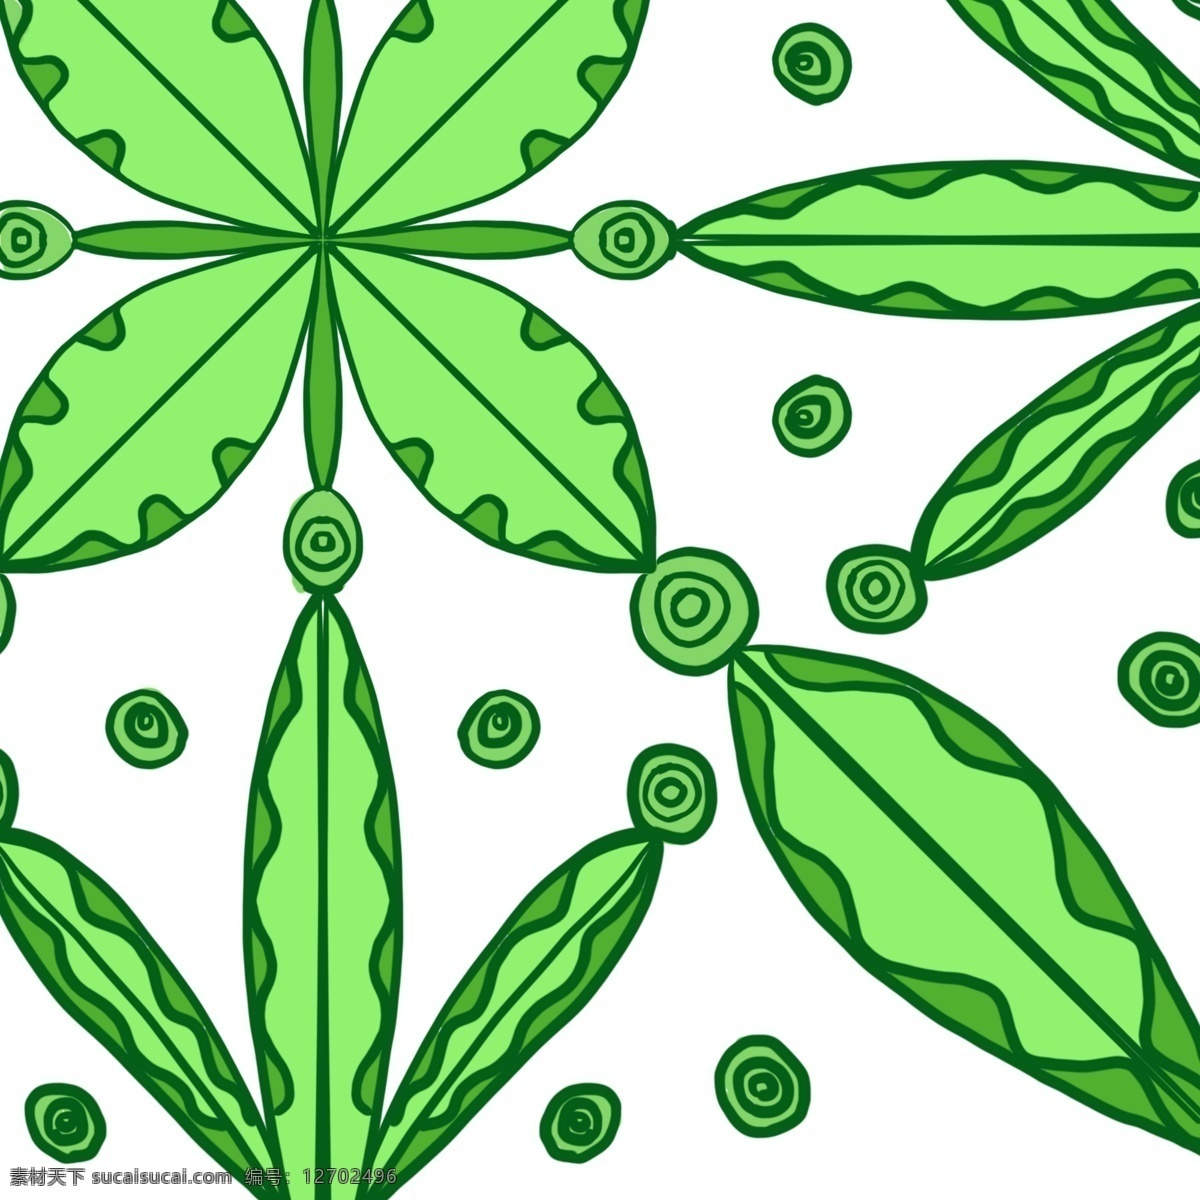 树叶 植物 底纹 绿色 养眼 可爱 创意 商用 清新 背景 原创 圆圈